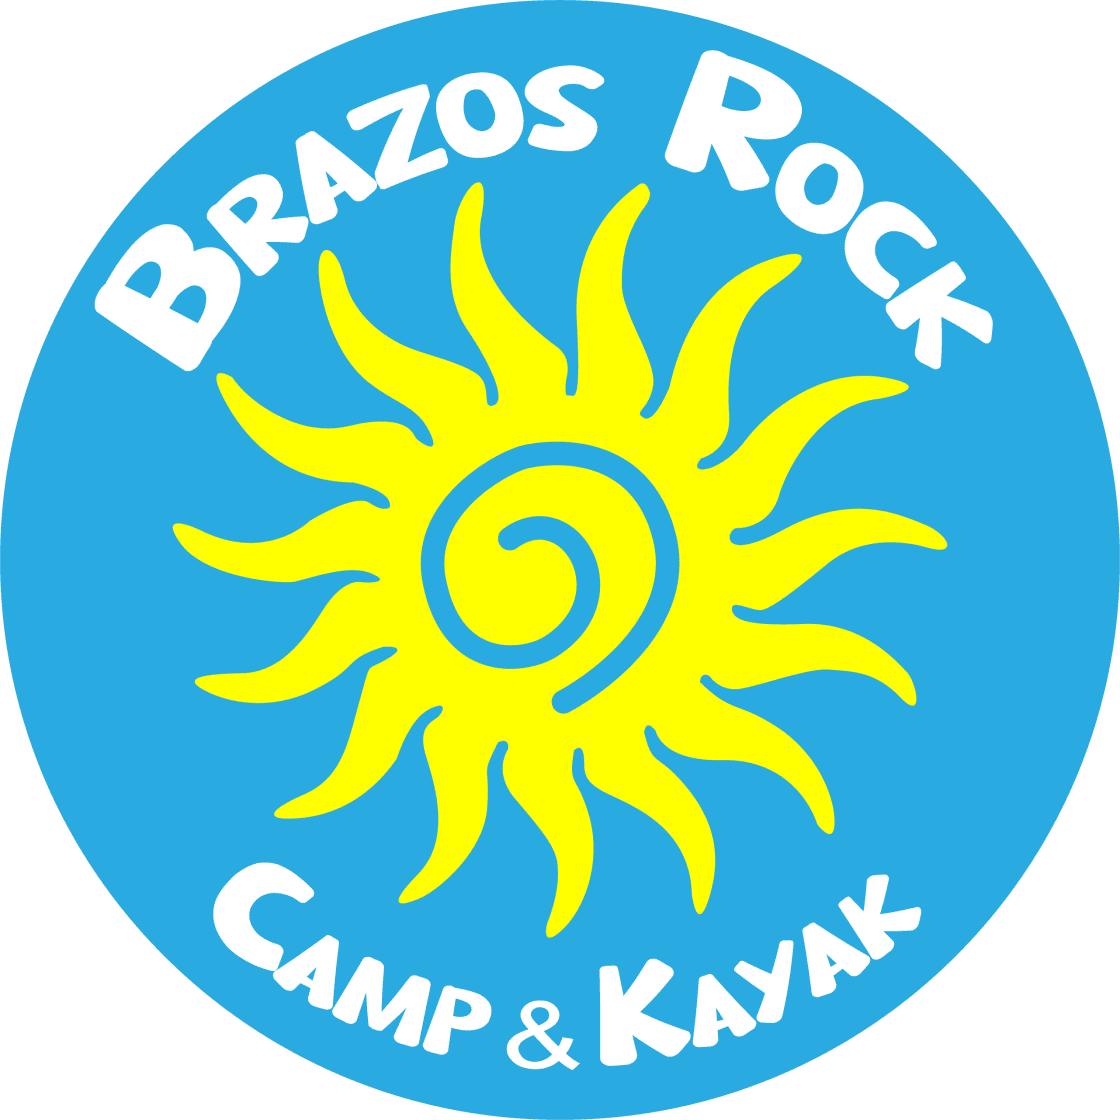 Creekside Brazos Rock Camp & Kayak